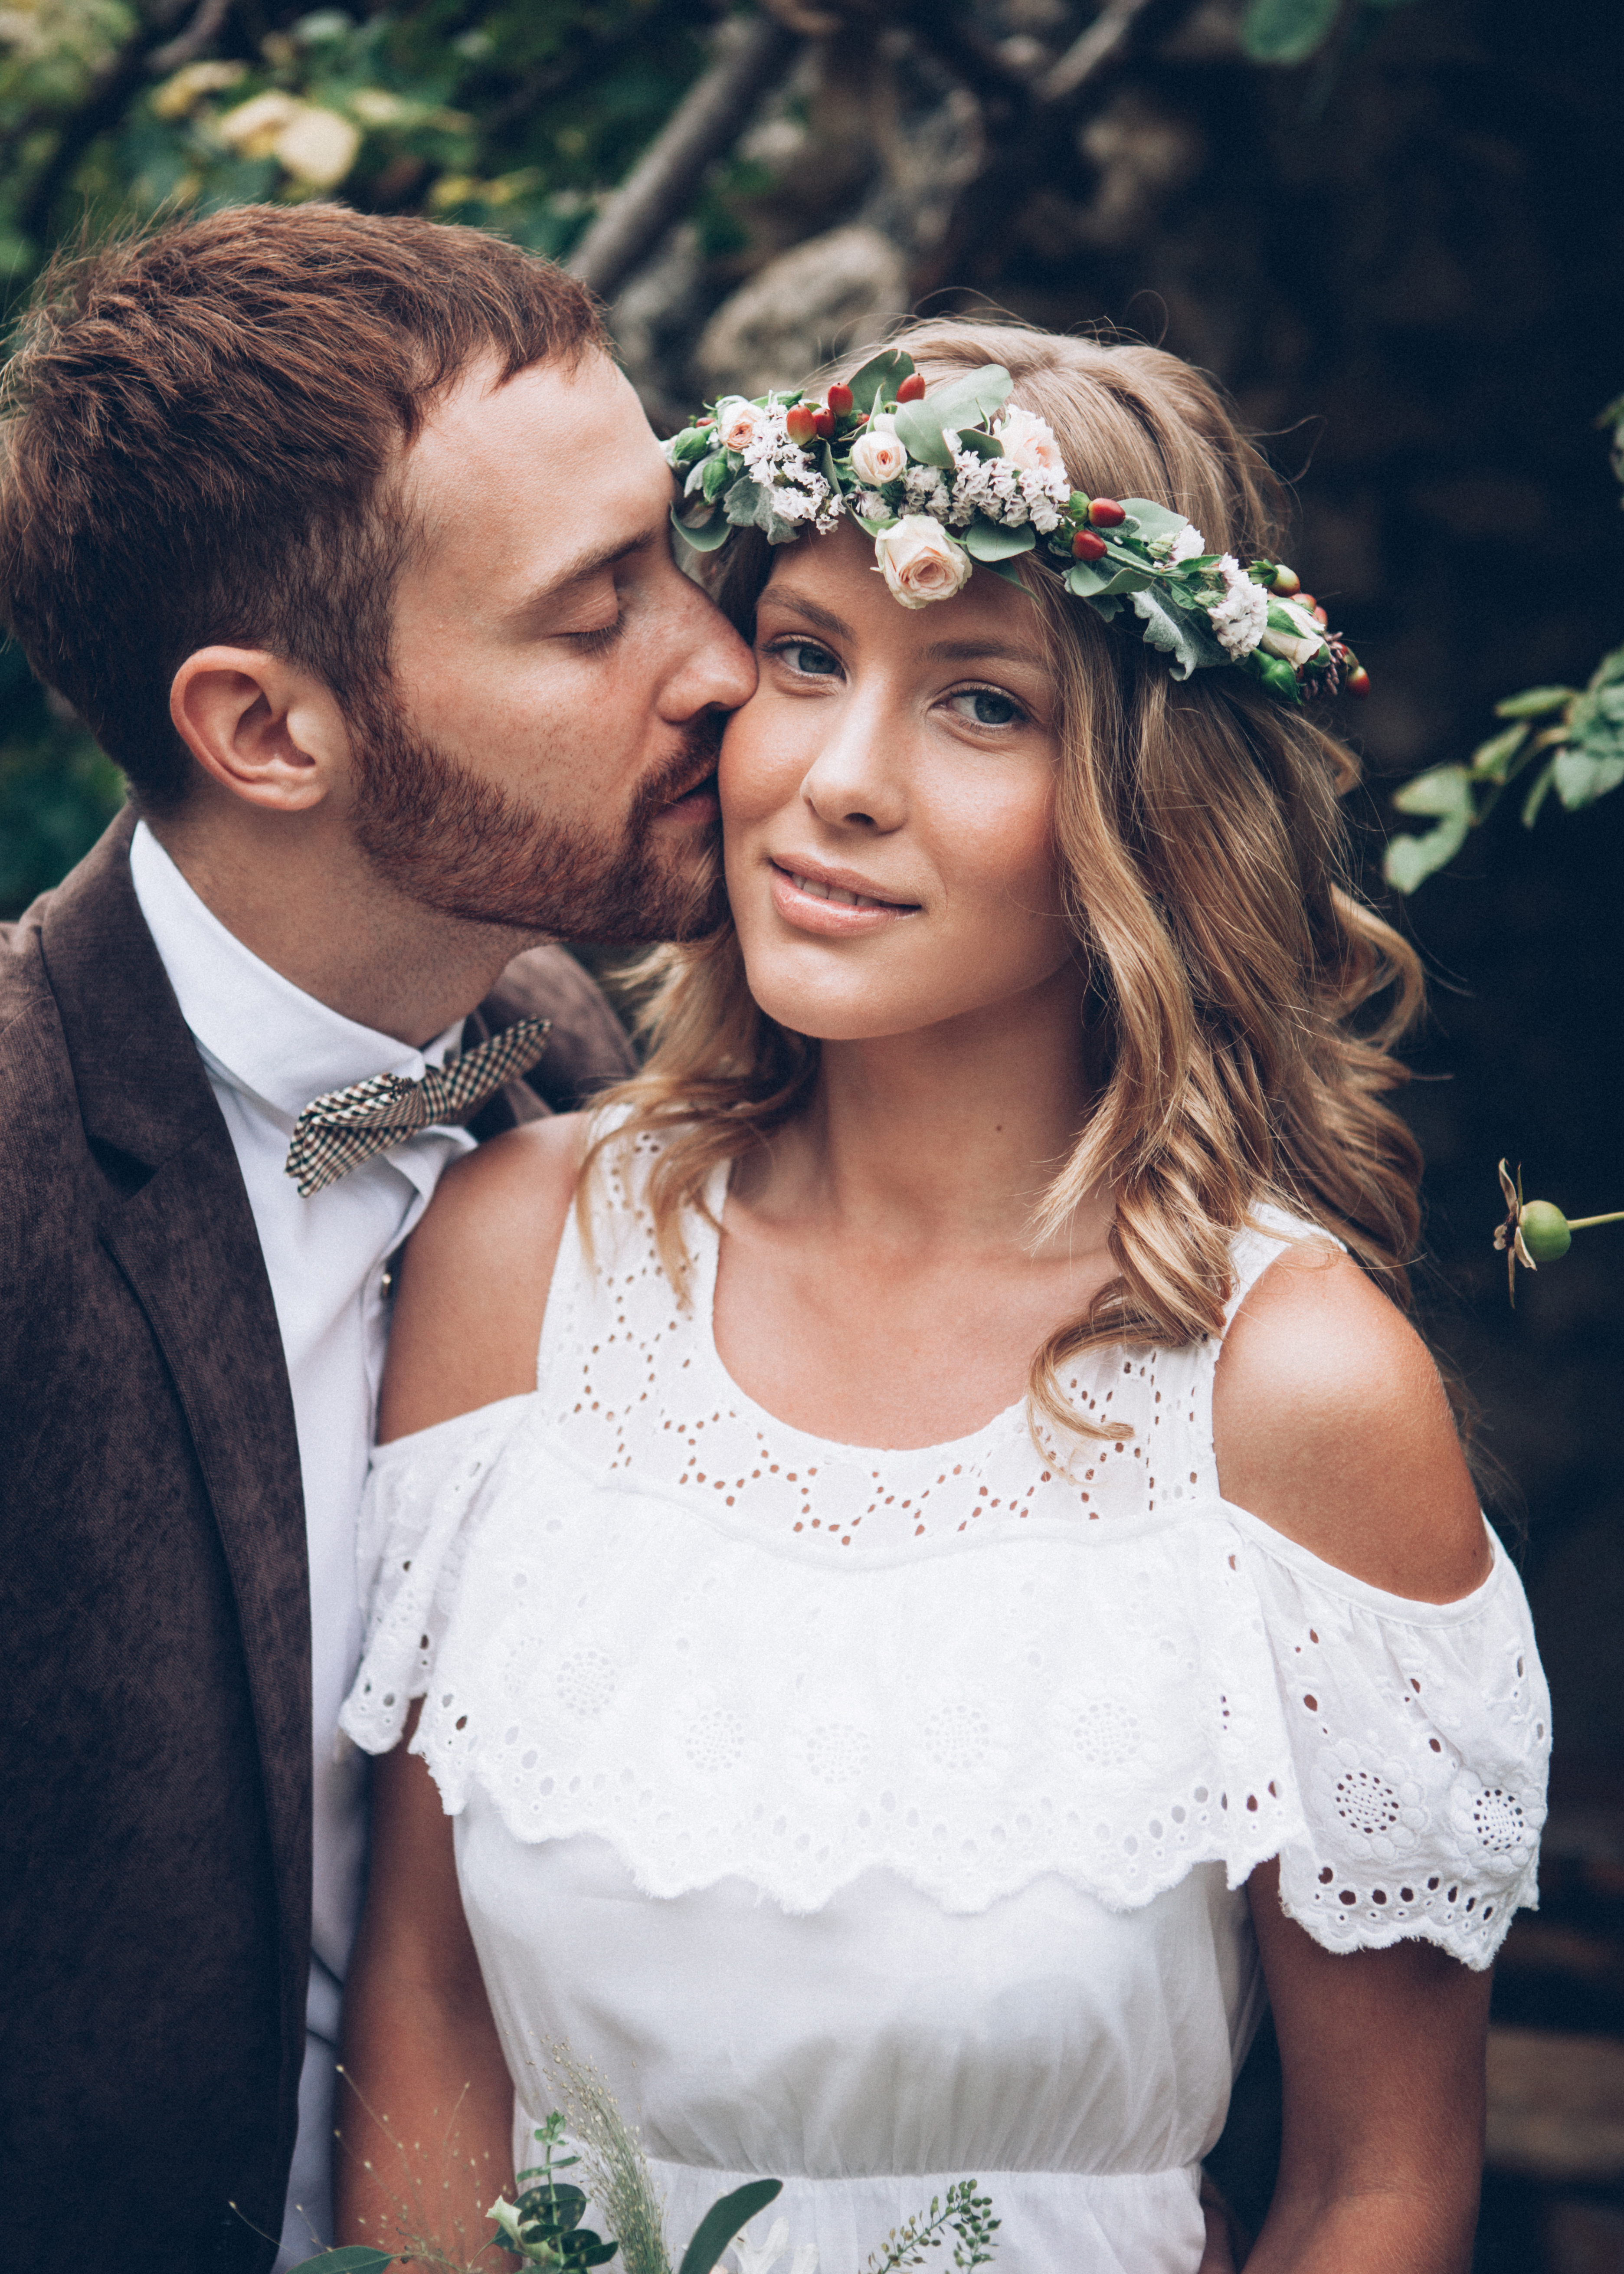 Un homme embrassant la joue de sa fiancée. | Source : Shutterstock